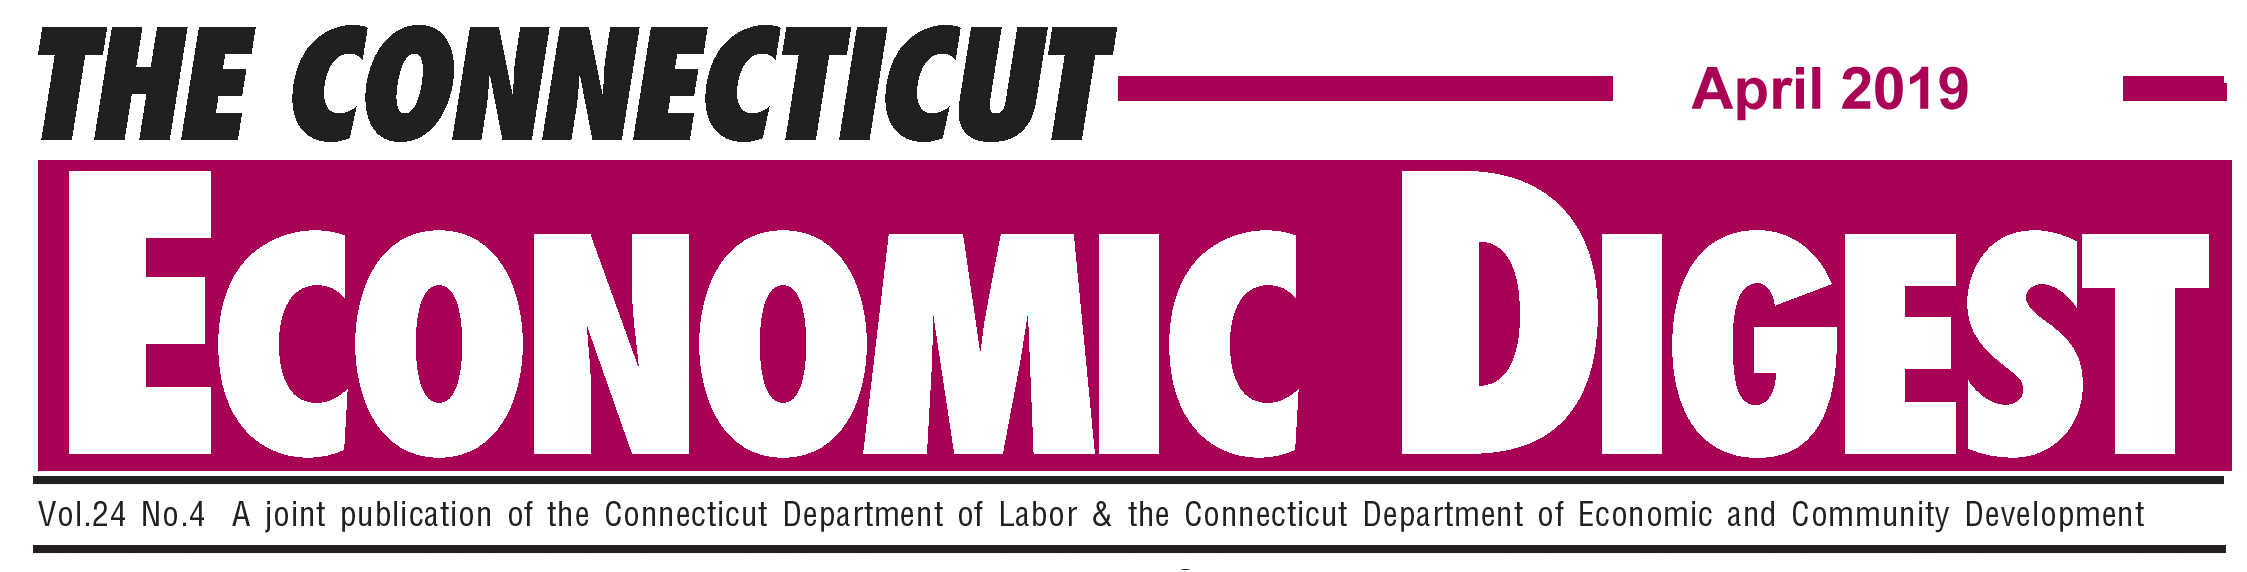 April 2019 Connecticut Economic Digest